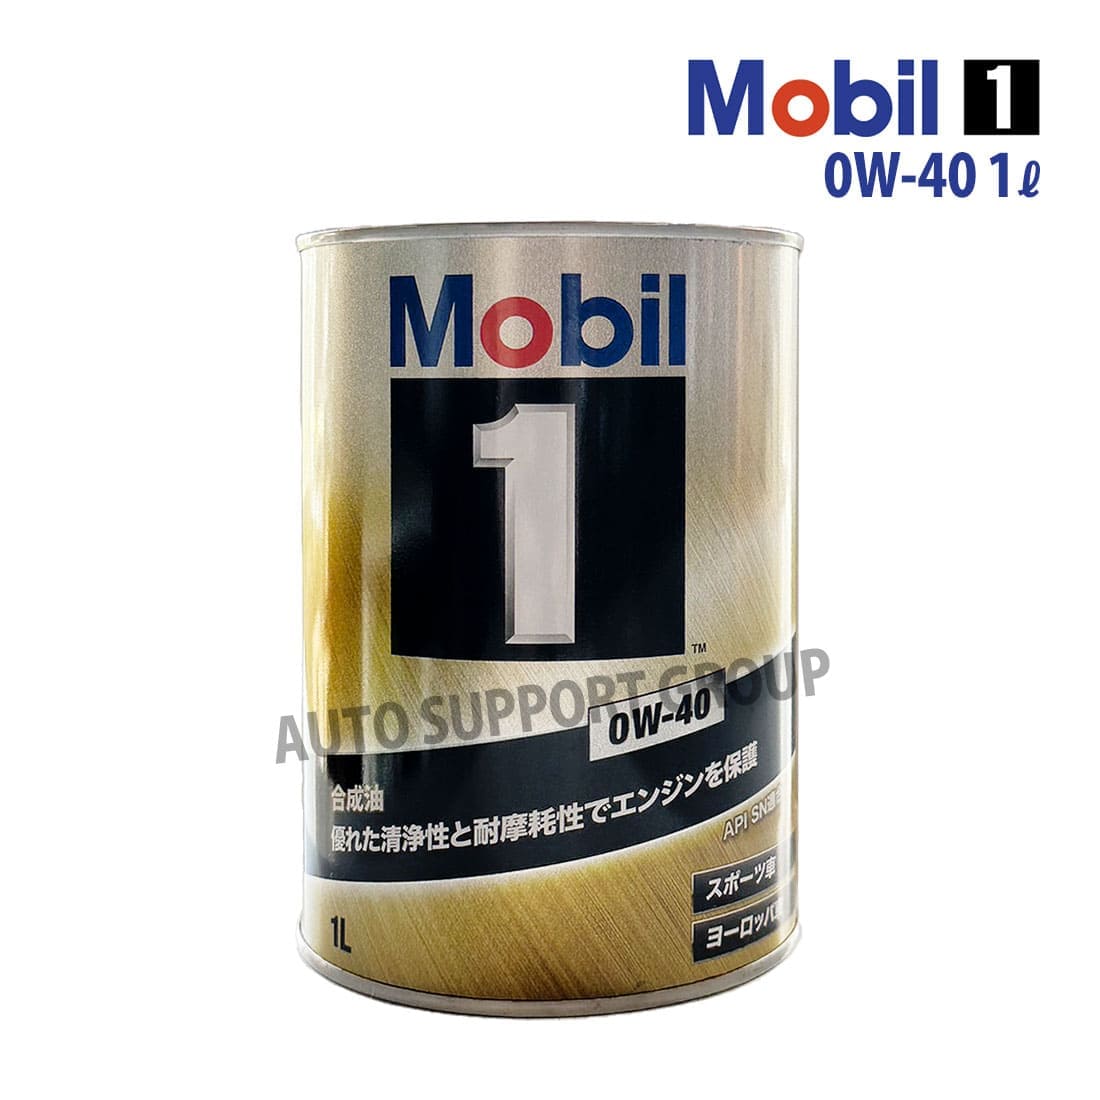 エンジンオイル 0W-40 SN モービル1 Mobil1 1L缶 (1リットル)  :ys-mob1010139-2304-10001:オートサポートグループ 通販 